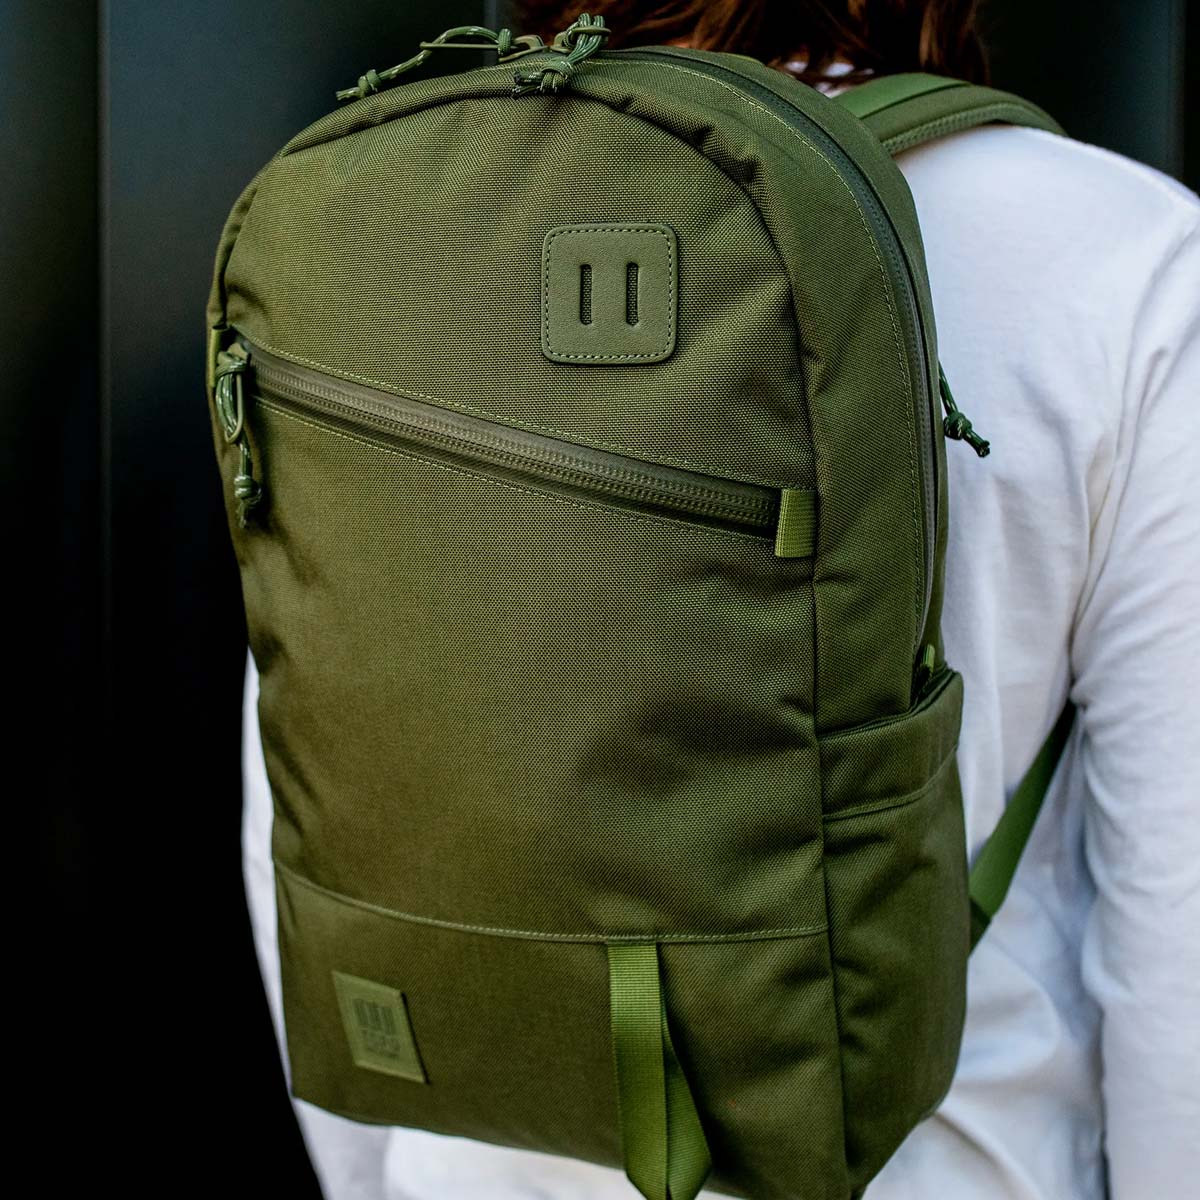 Topo Designs Daypack Tech Olive, starker Rucksack in 1000D Nylon mit 15 Zoll Laptopfach und 21 Liter Stauraum